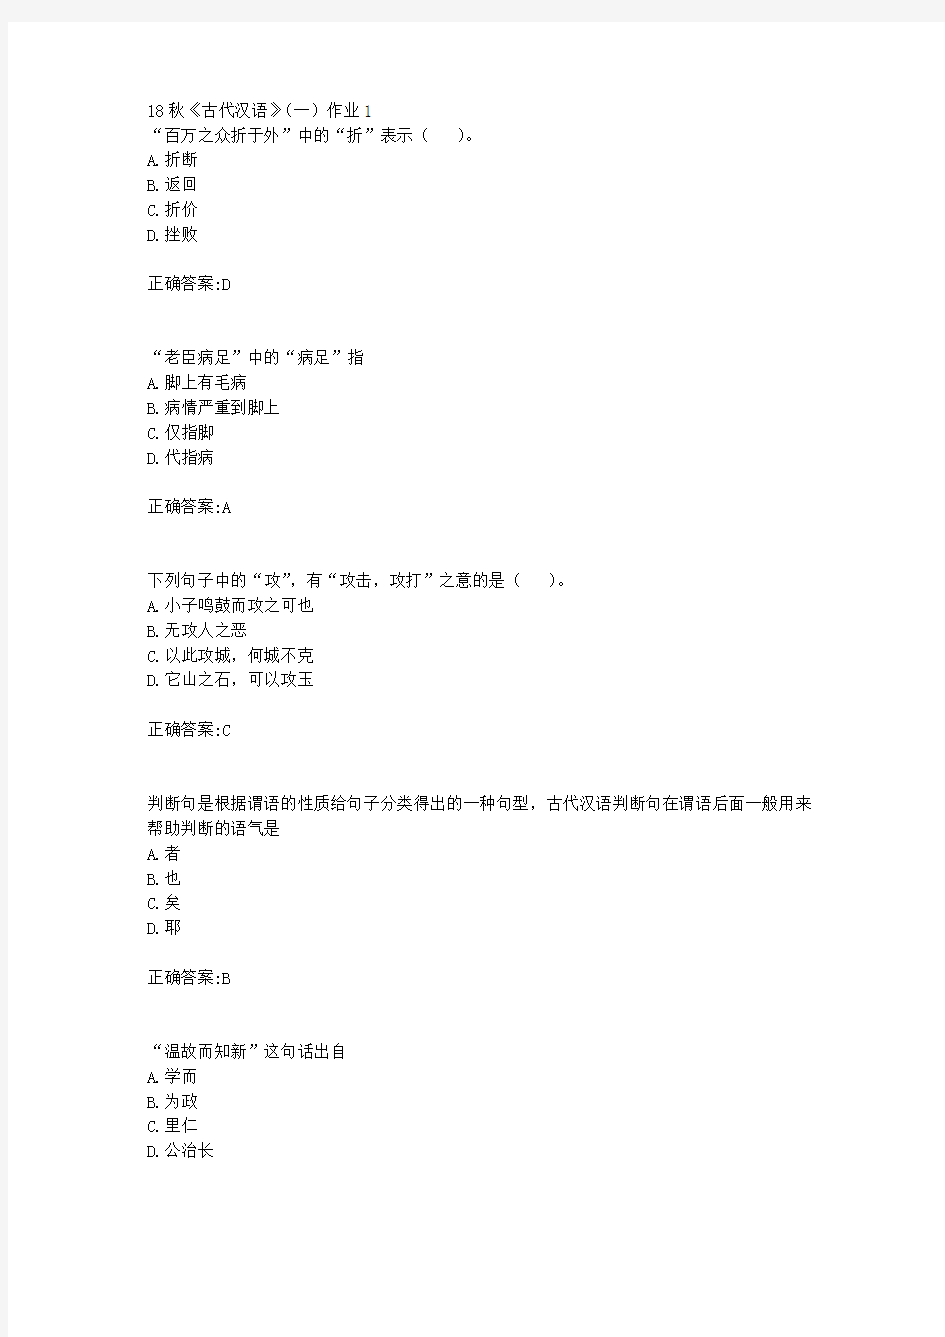 北京语言大学 18秋《古代汉语》(一)作业1满分答案